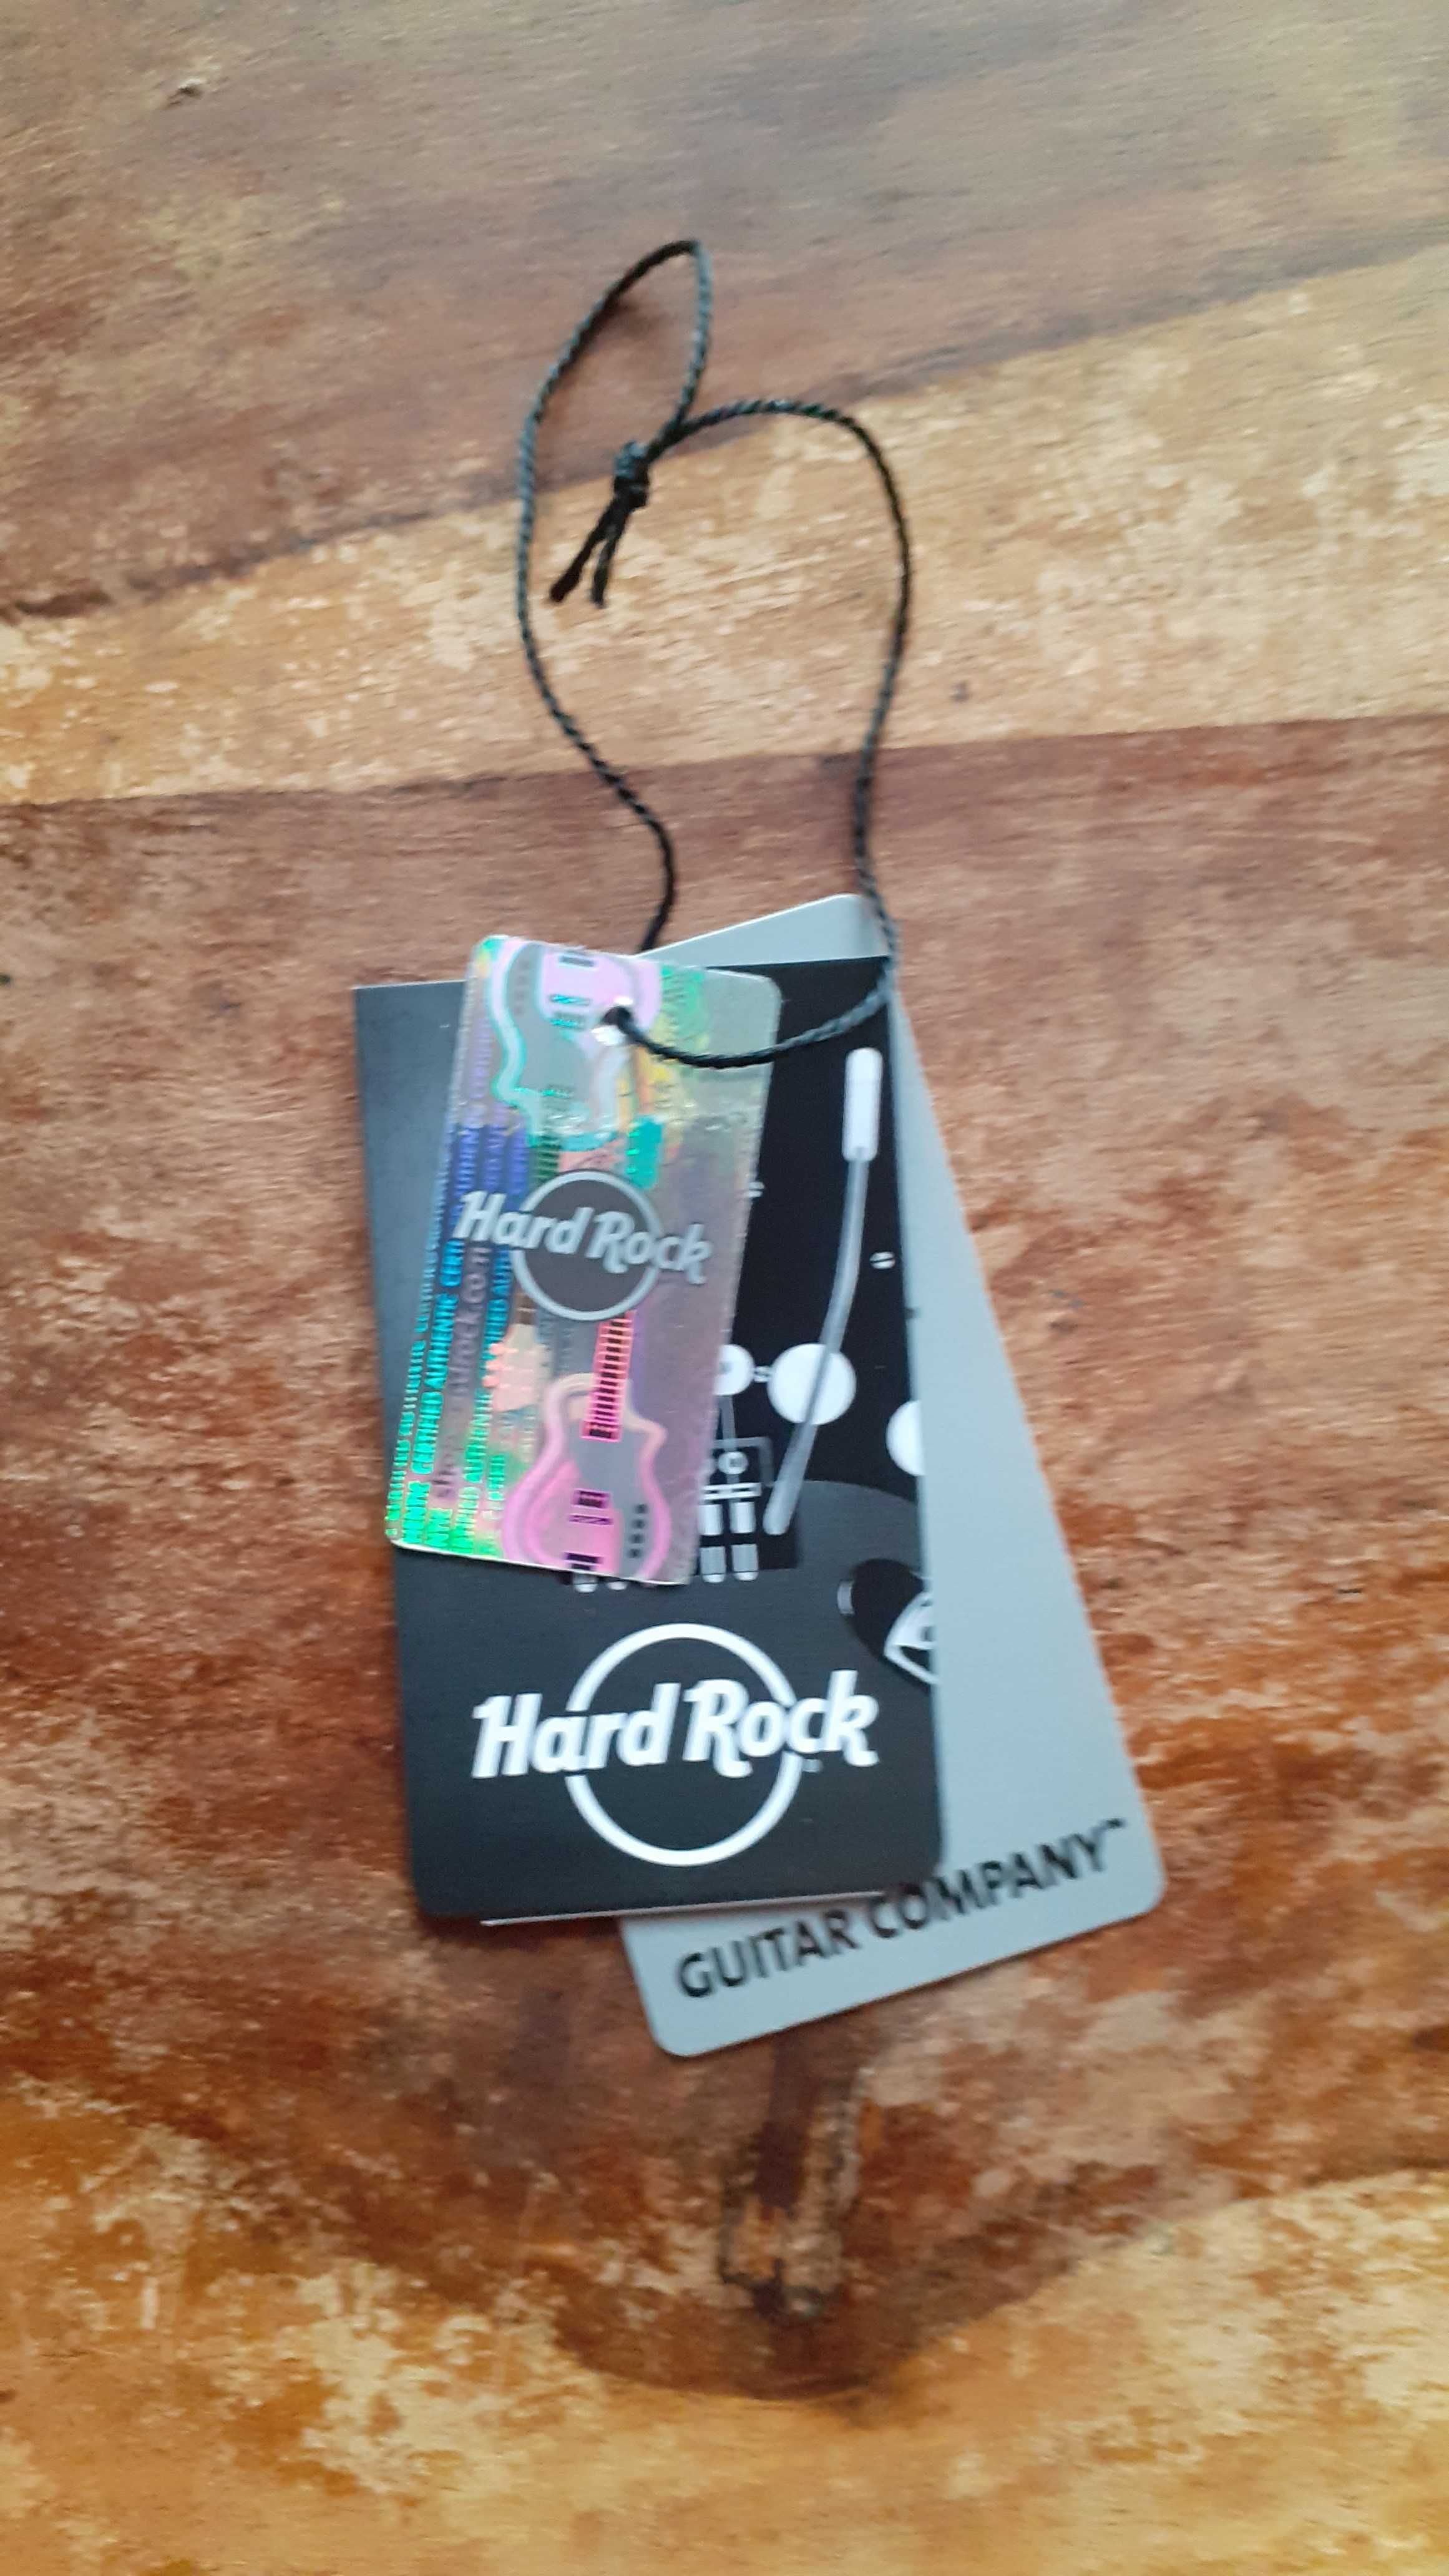 тениска черна Hard Rock Cafe London Хард Рок Кафе Лондон оригинал